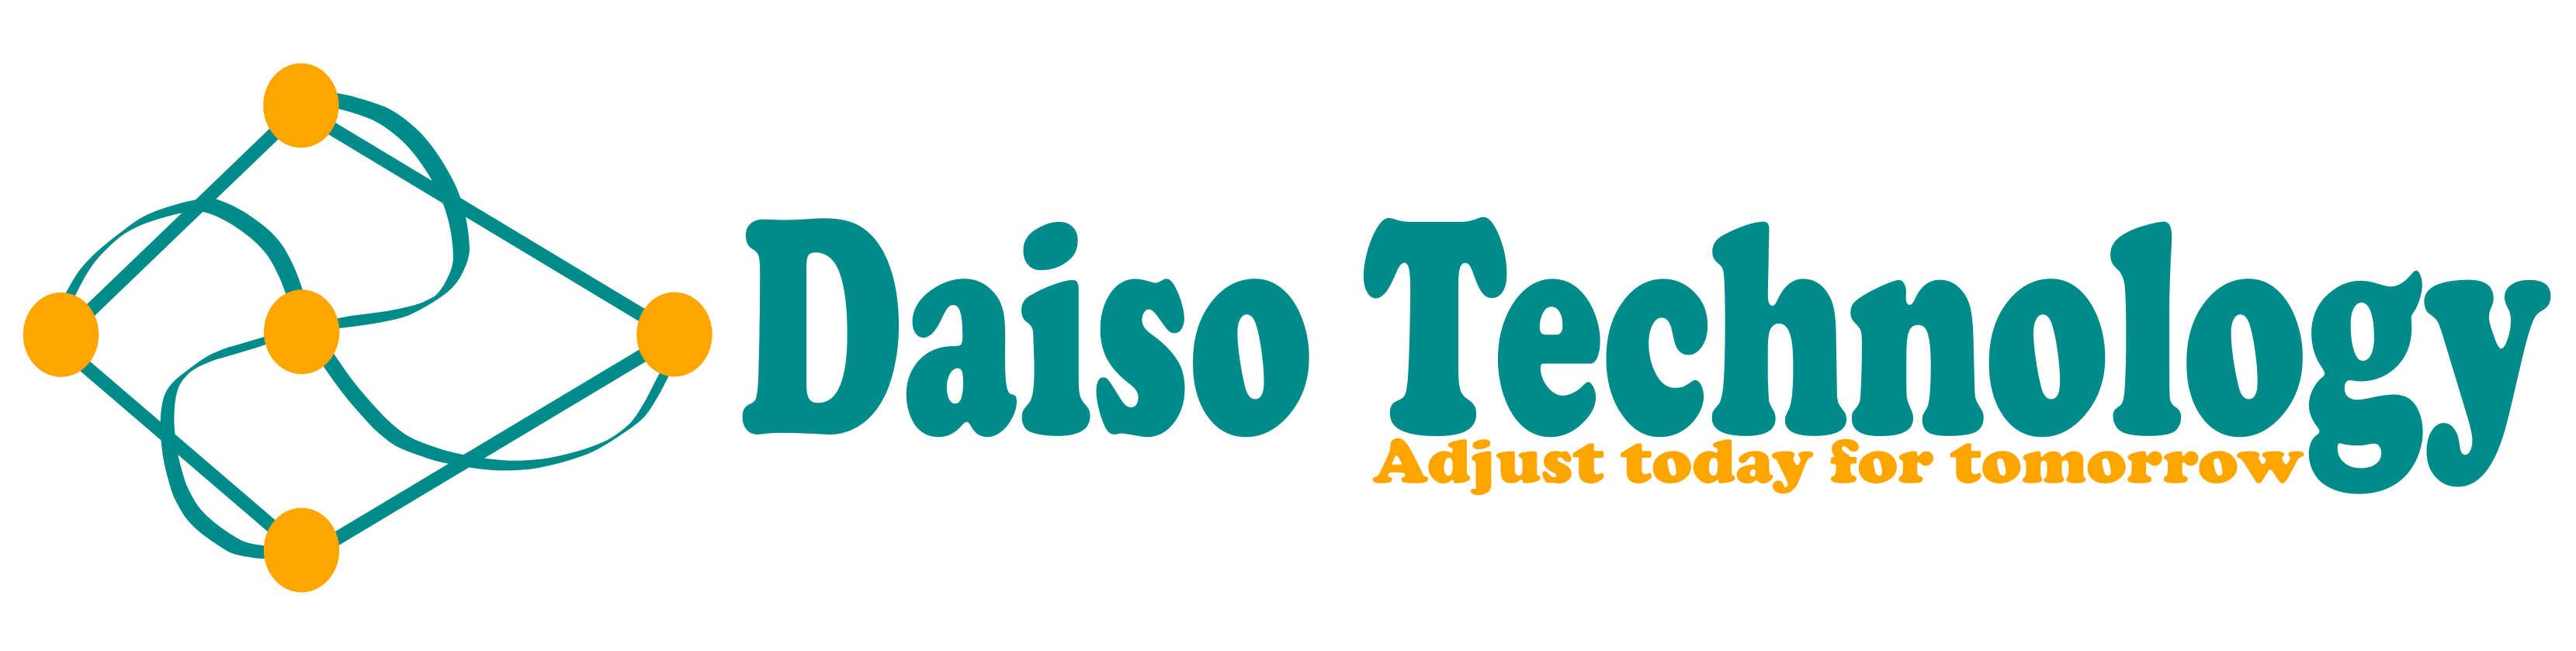 Daiso Technology AB